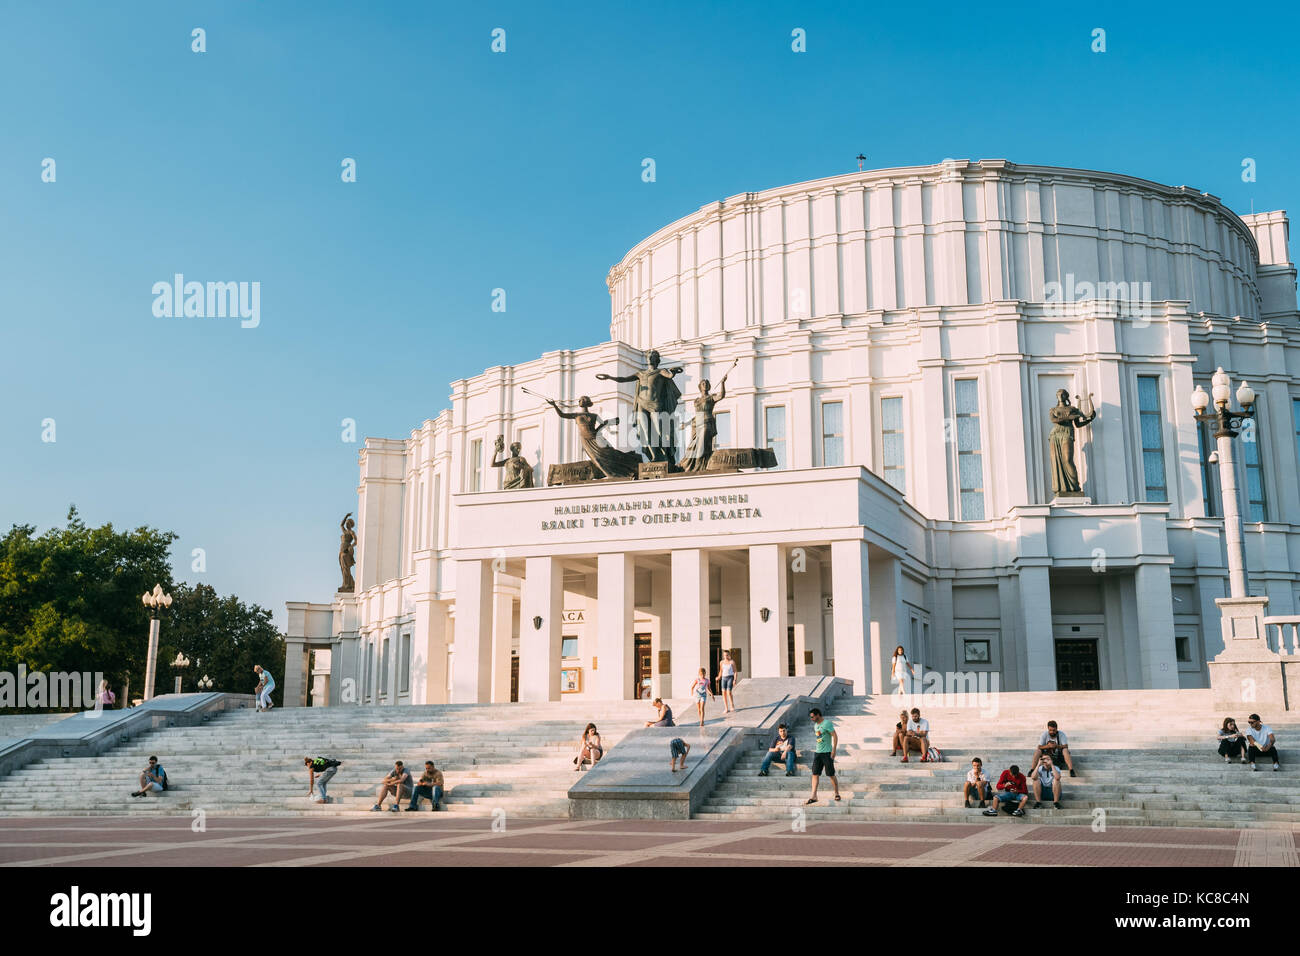 Bielorussia Minsk. facciata principale della National Academic grand opera Ballet Theatre, edificio bianco di stile costruttivista decorato da sculture. Appoggio yo Foto Stock